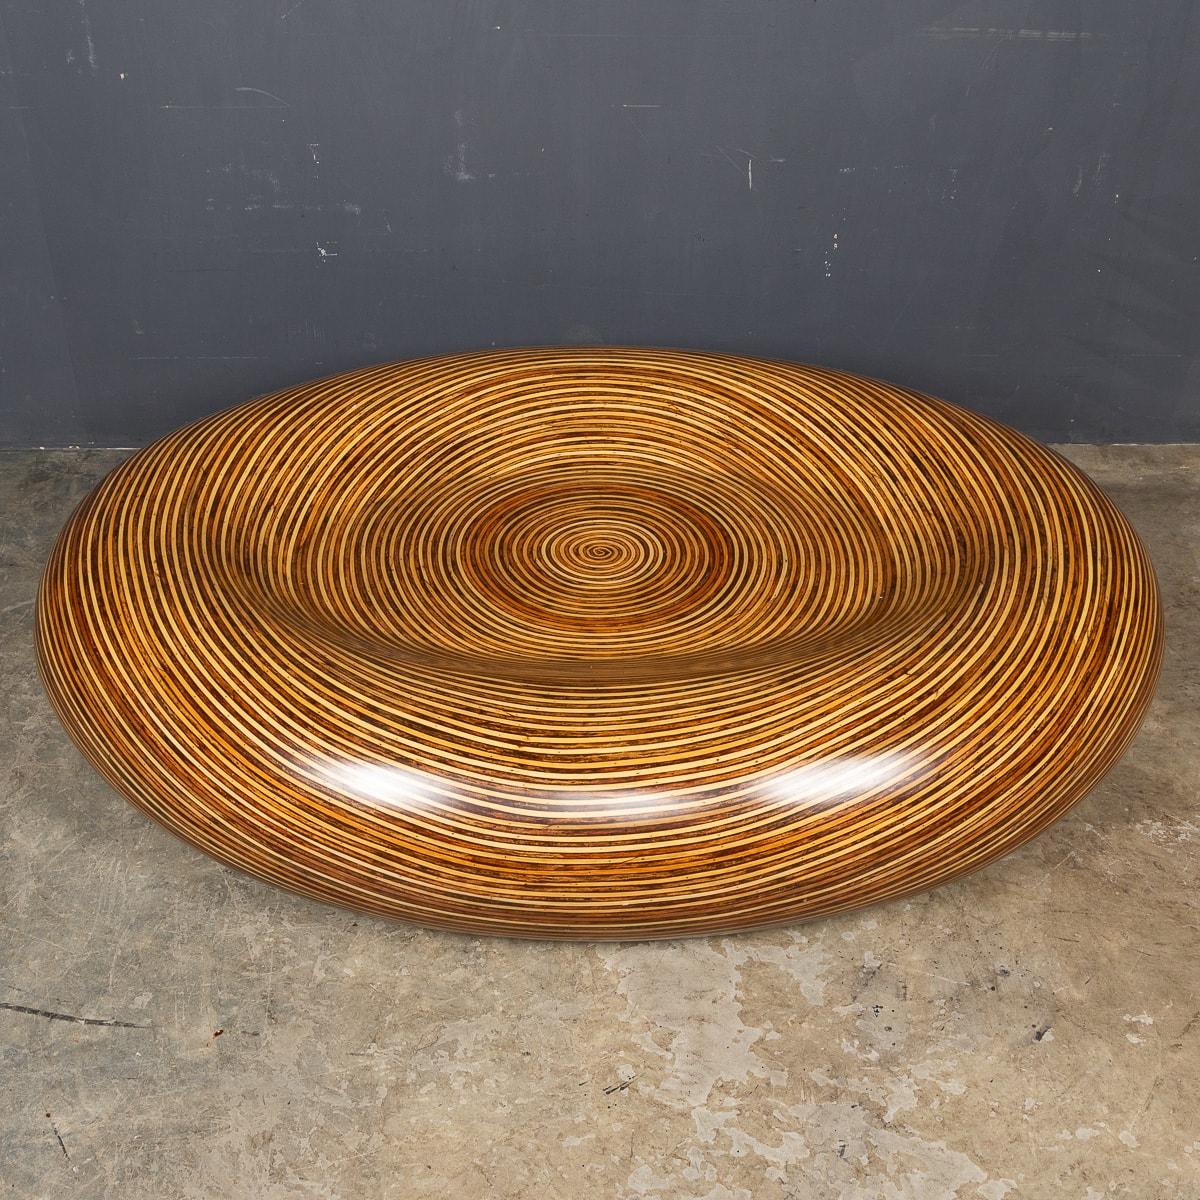 Ein hervorragender Tisch aus Fiberglas aus dem 20. Jahrhundert, der nahtlos zu einer fesselnden runden Form geformt wurde, mit einem Schichtmuster in Holzoptik, das sich über seine gesamte Oberfläche erstreckt. Dieser großzügig bemessene Tisch hat